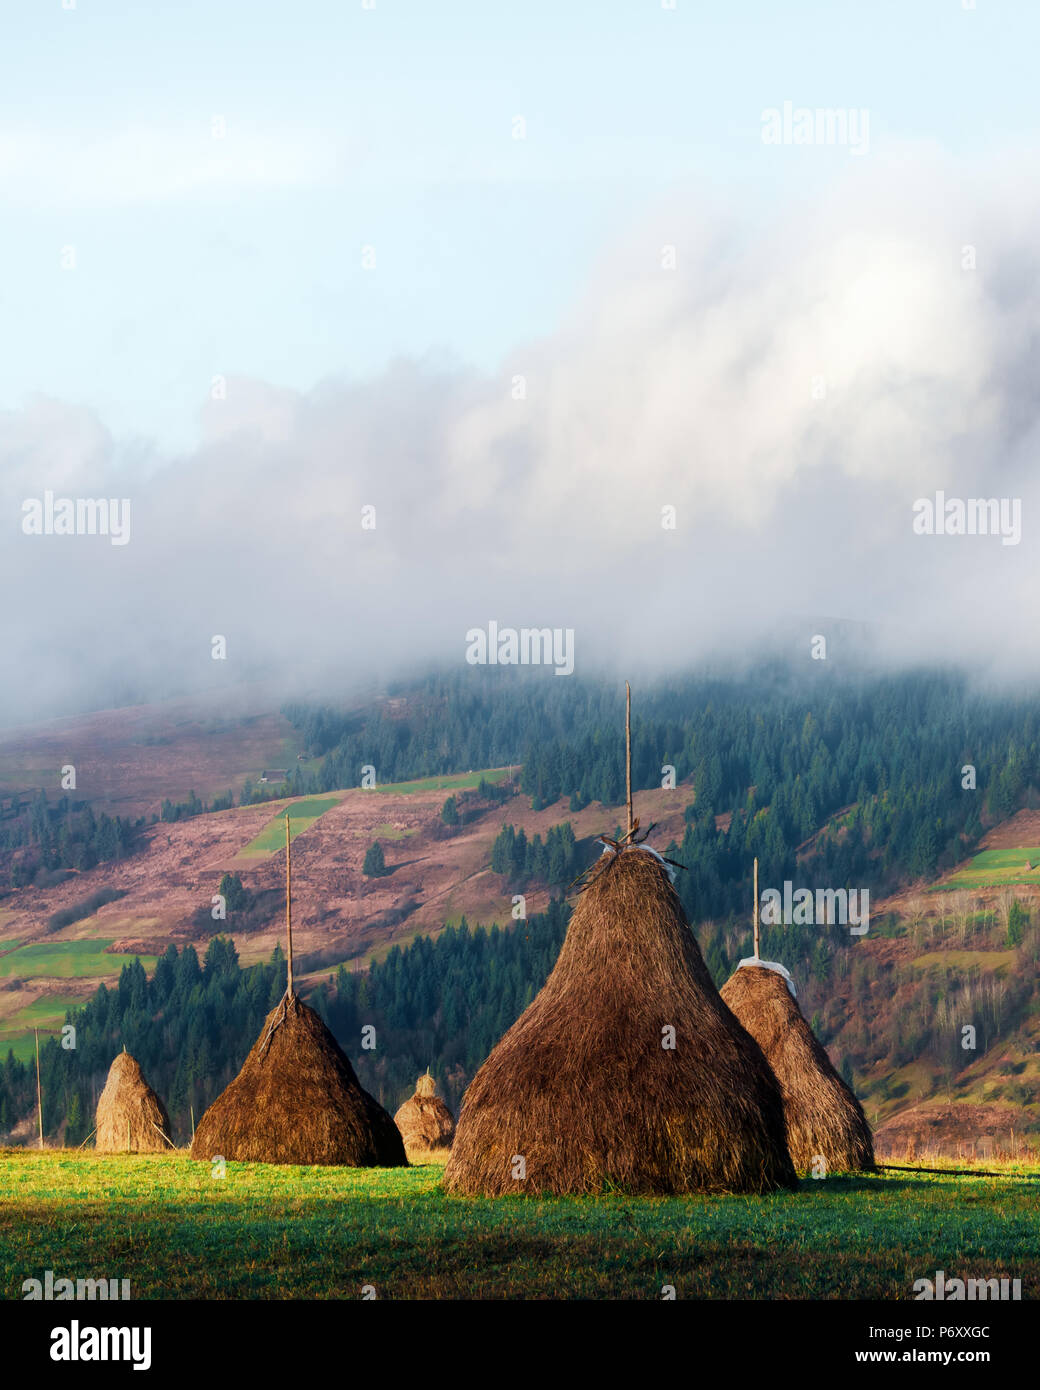 Amazing rural scene on autumn valley Stock Photo